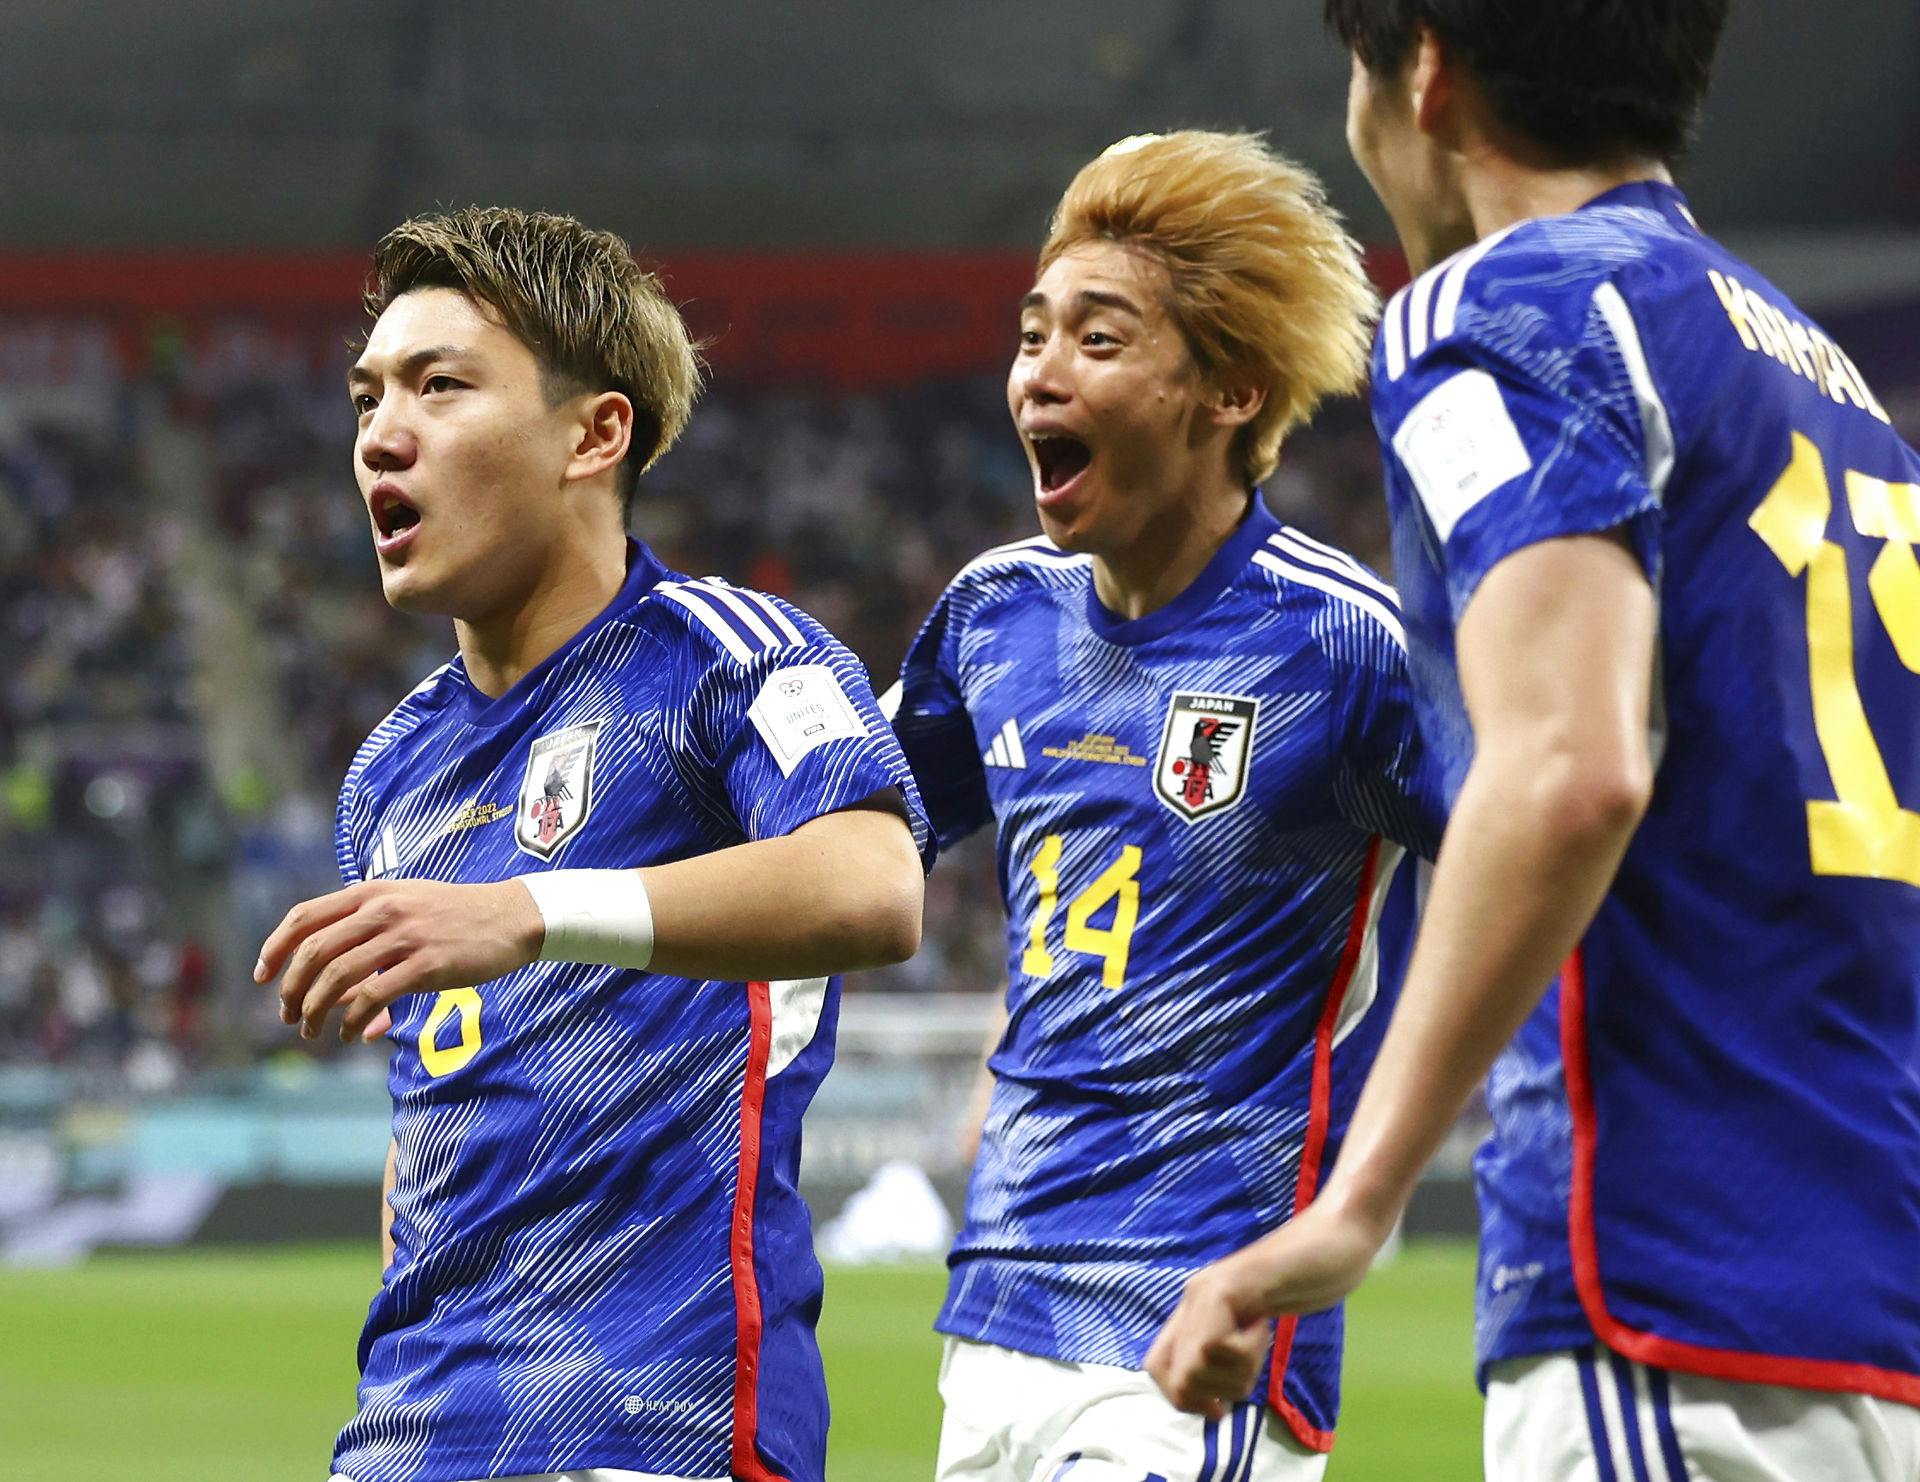 Fortjent jubler de japanske spillere, efter at de vandt 2-1 over Tyskland.&nbsp;
